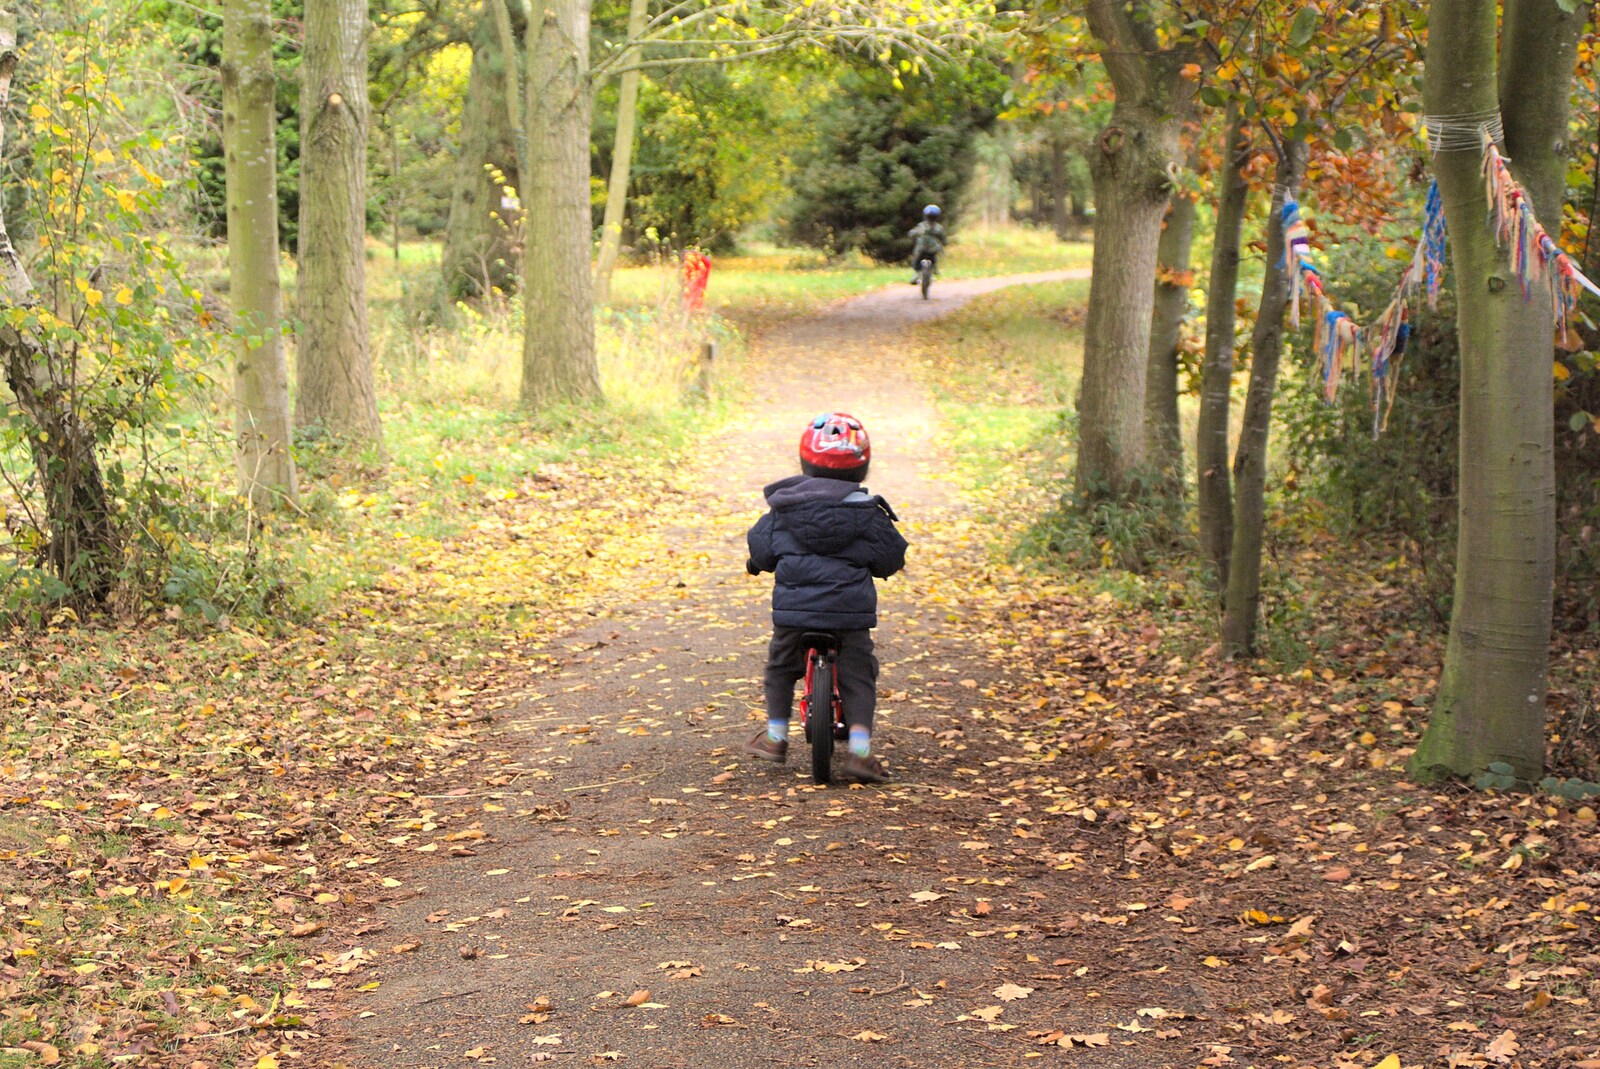 Fred on his balance bike from Autumn in Thornham Estate, Thornham, Suffolk - 6th November 2011